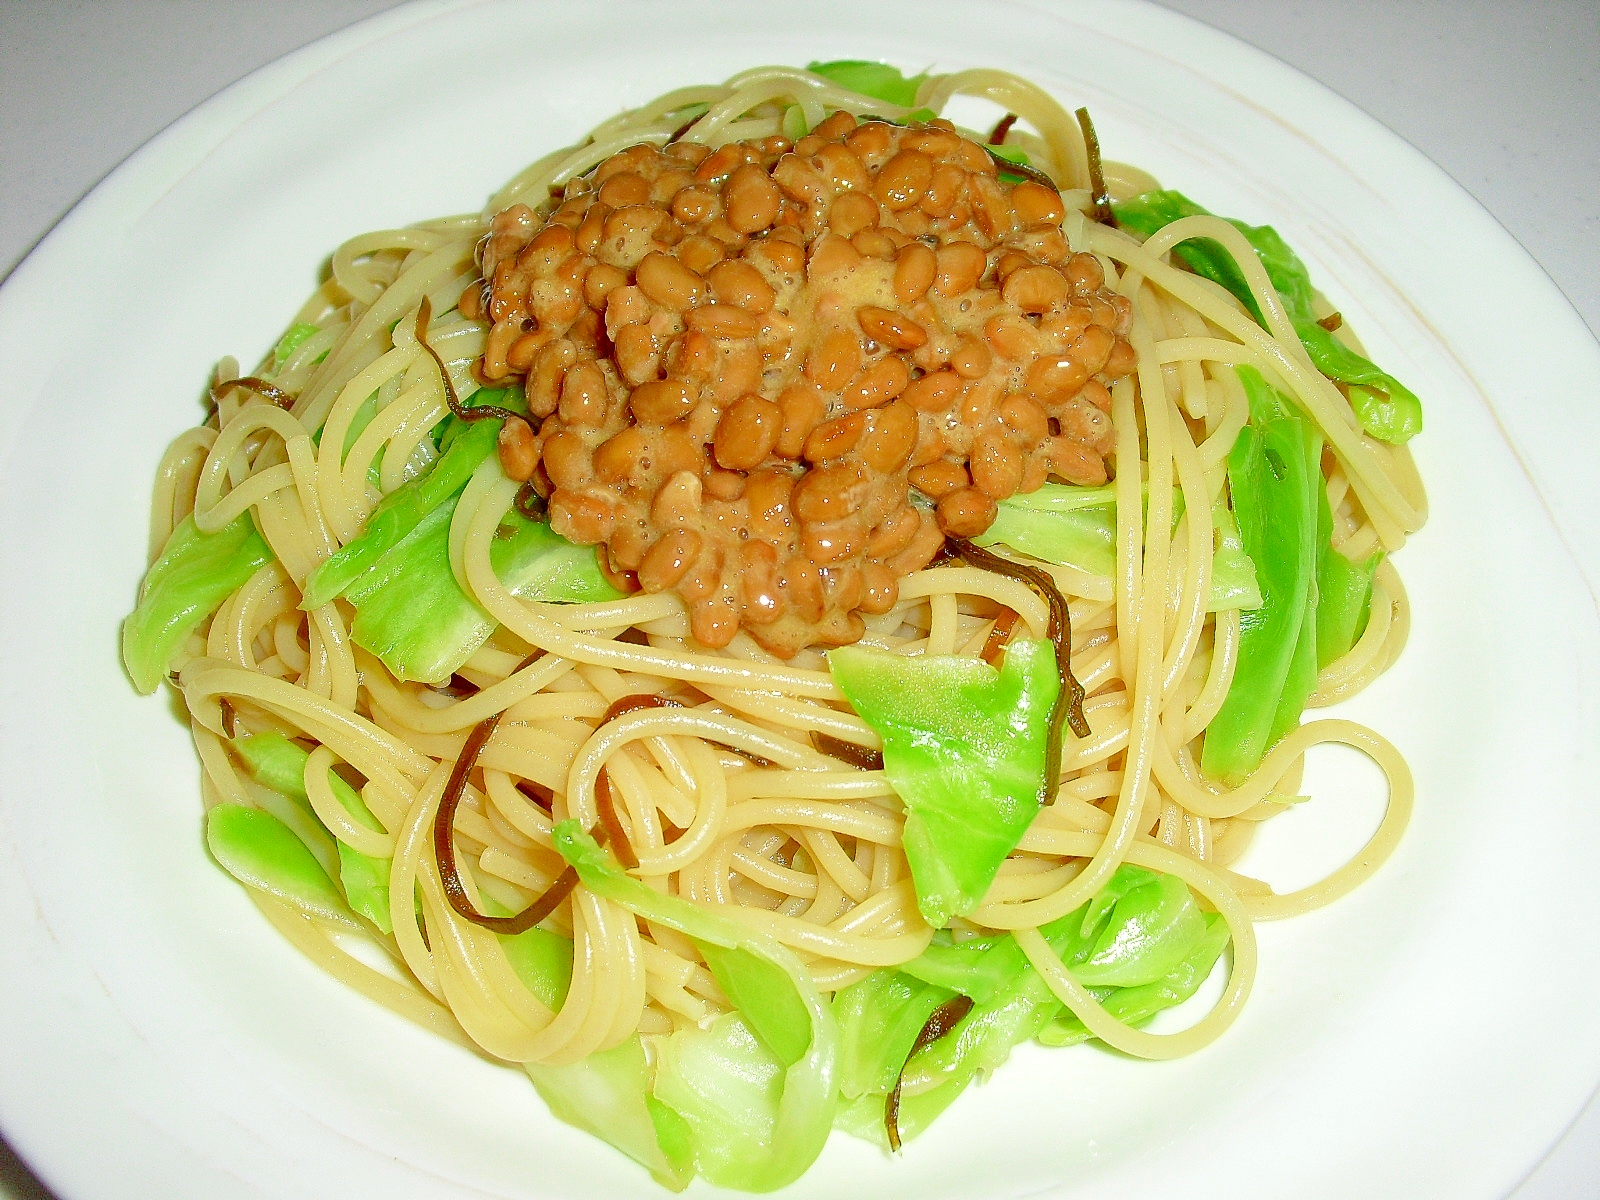 キャベツと納豆の最強コラボ おすすめコスパ抜群レシピ14選 Macaroni